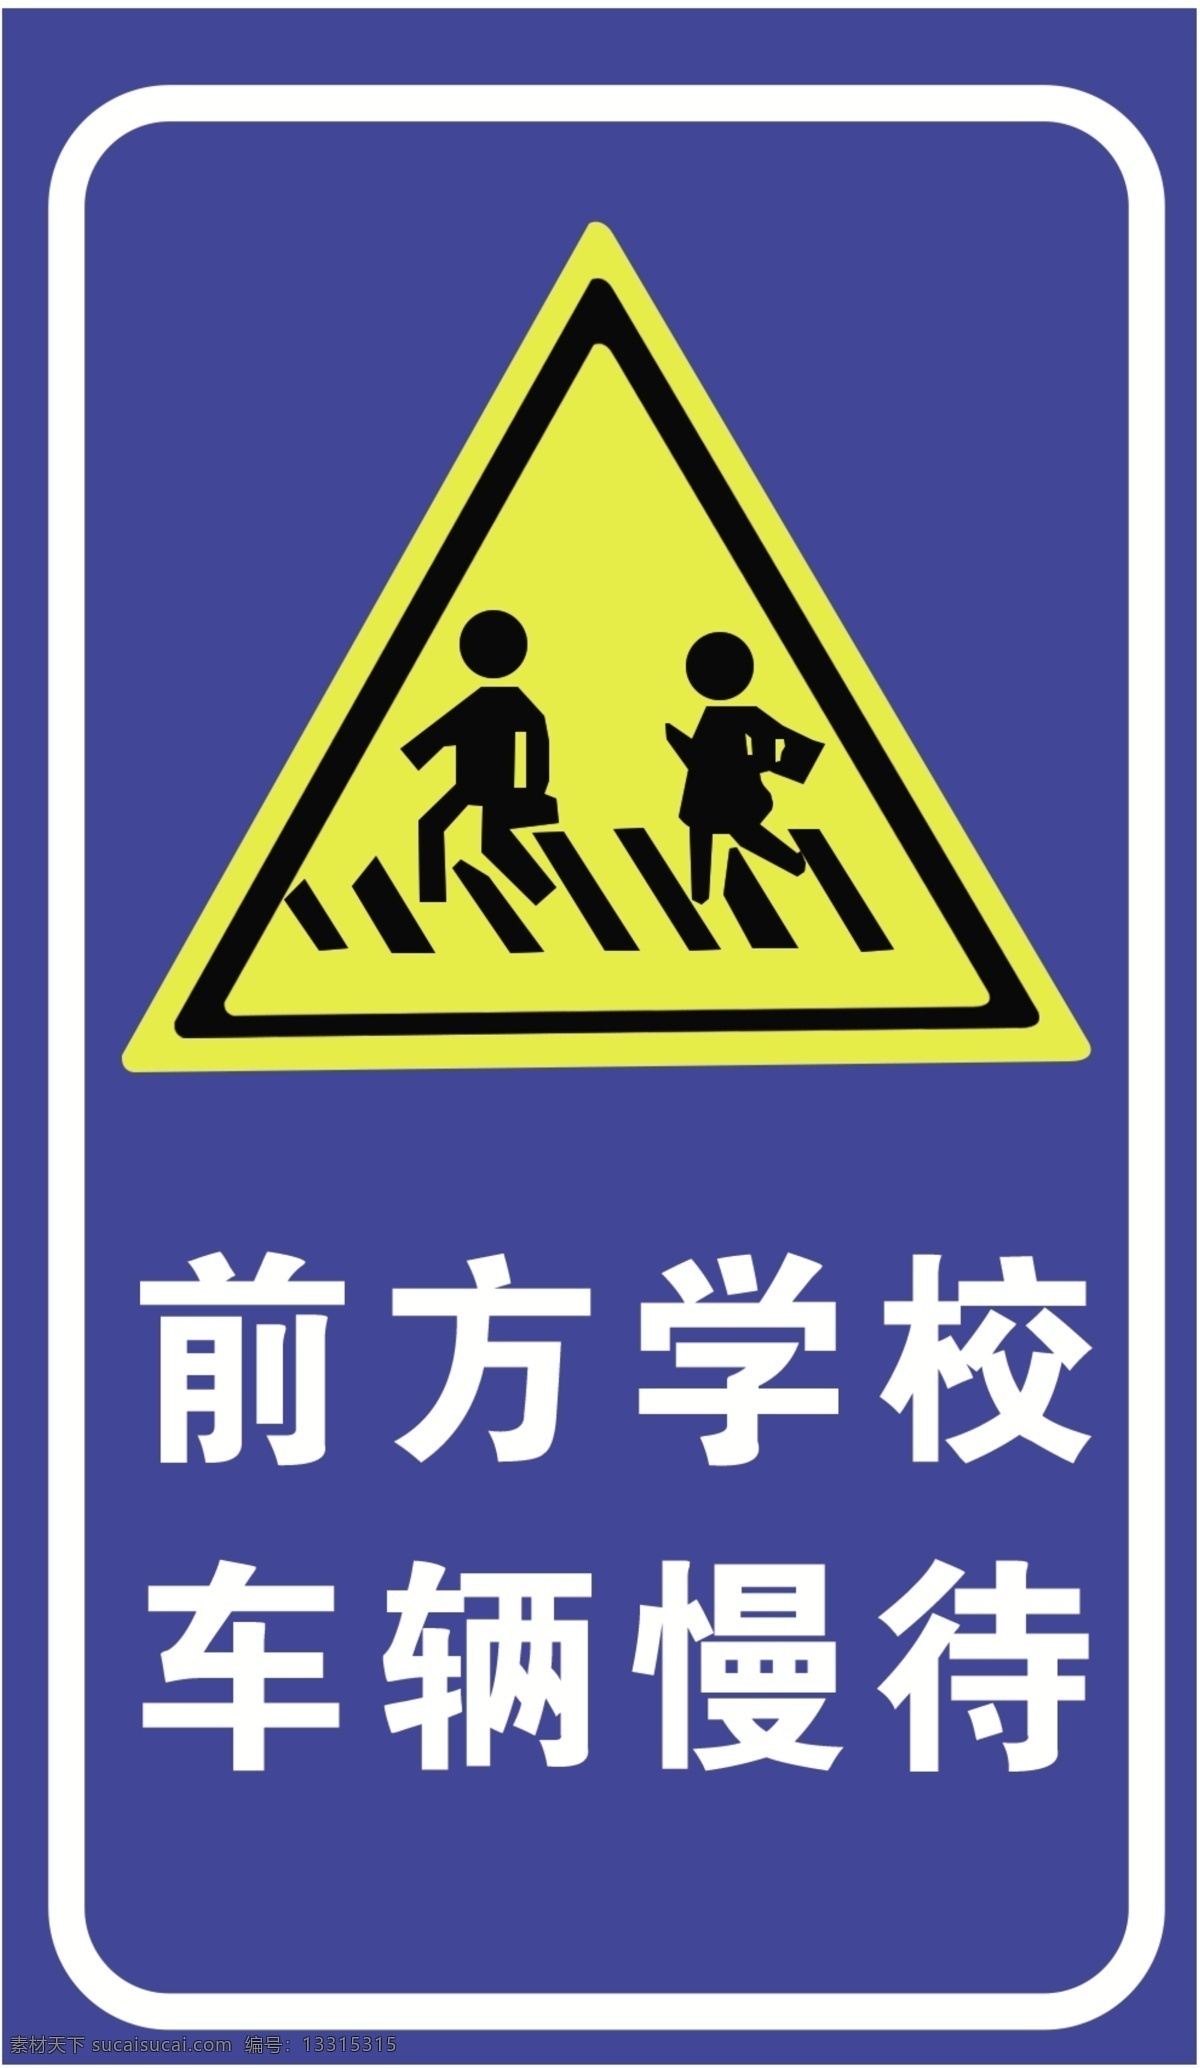 警示标志图片 前方学校 车辆慢行 警示标志 学校 慢行